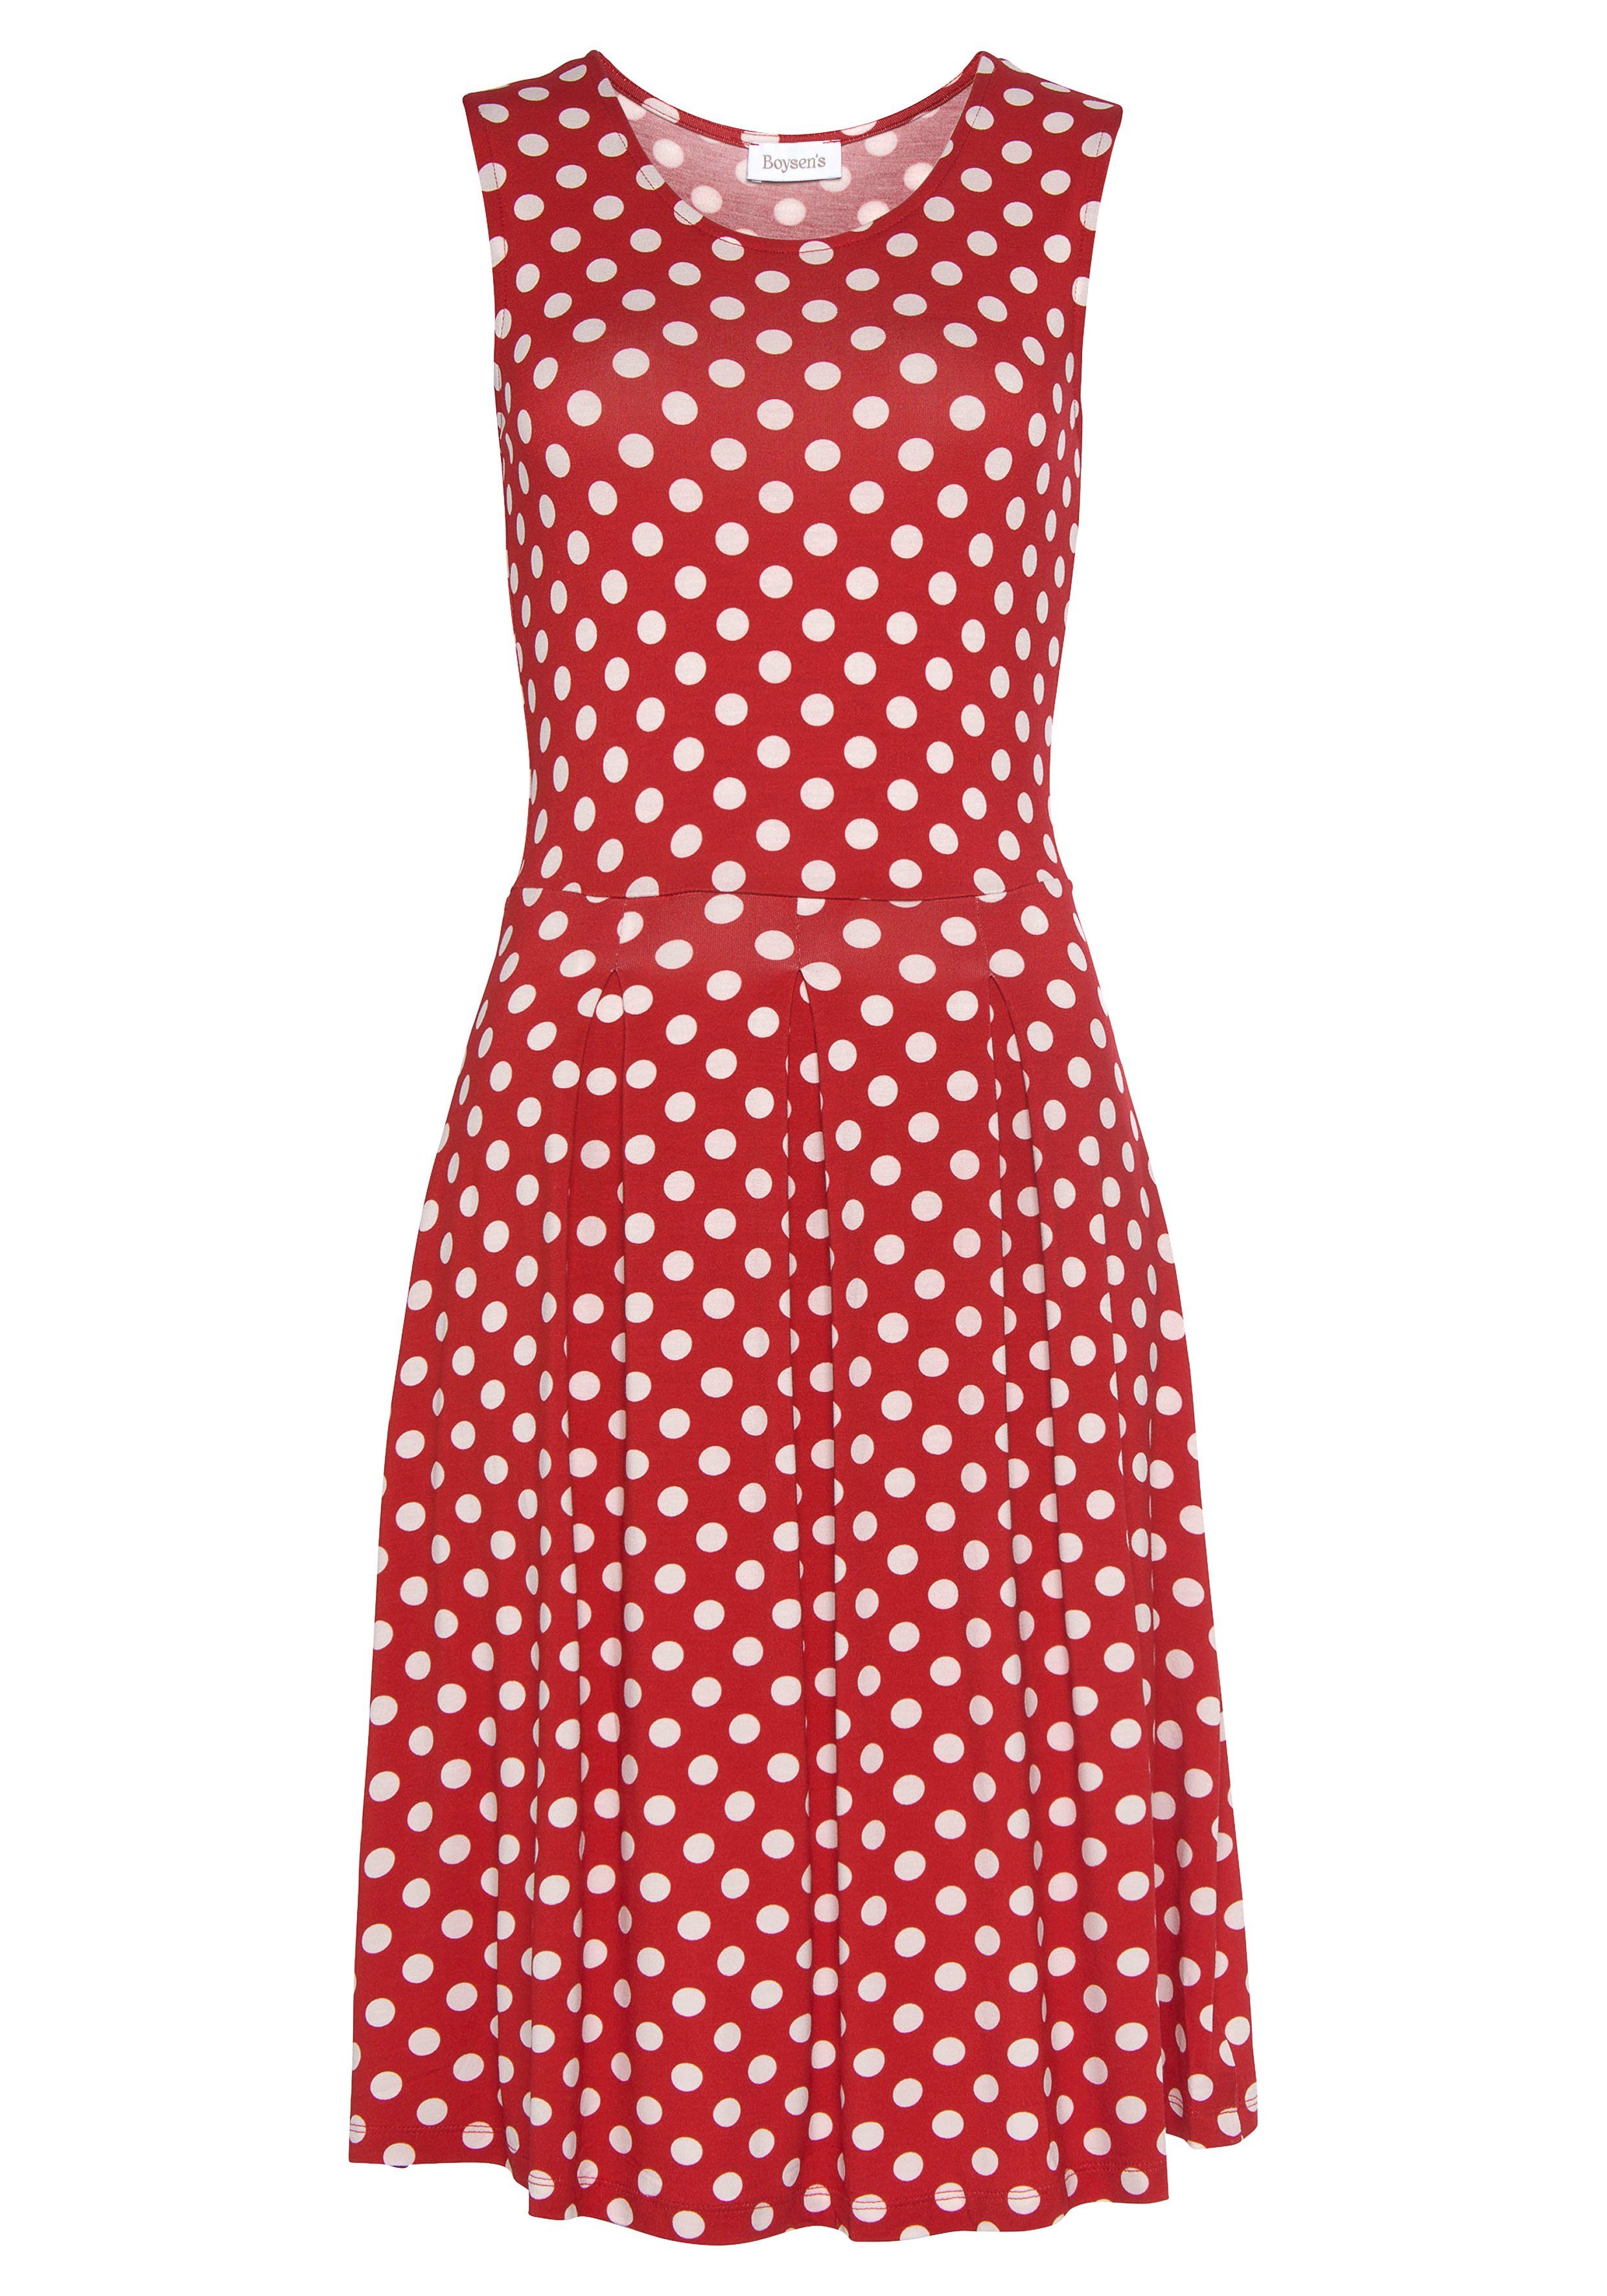 Boysen's Jerseykleid mit Tupfen-Print rot, weiß süßem